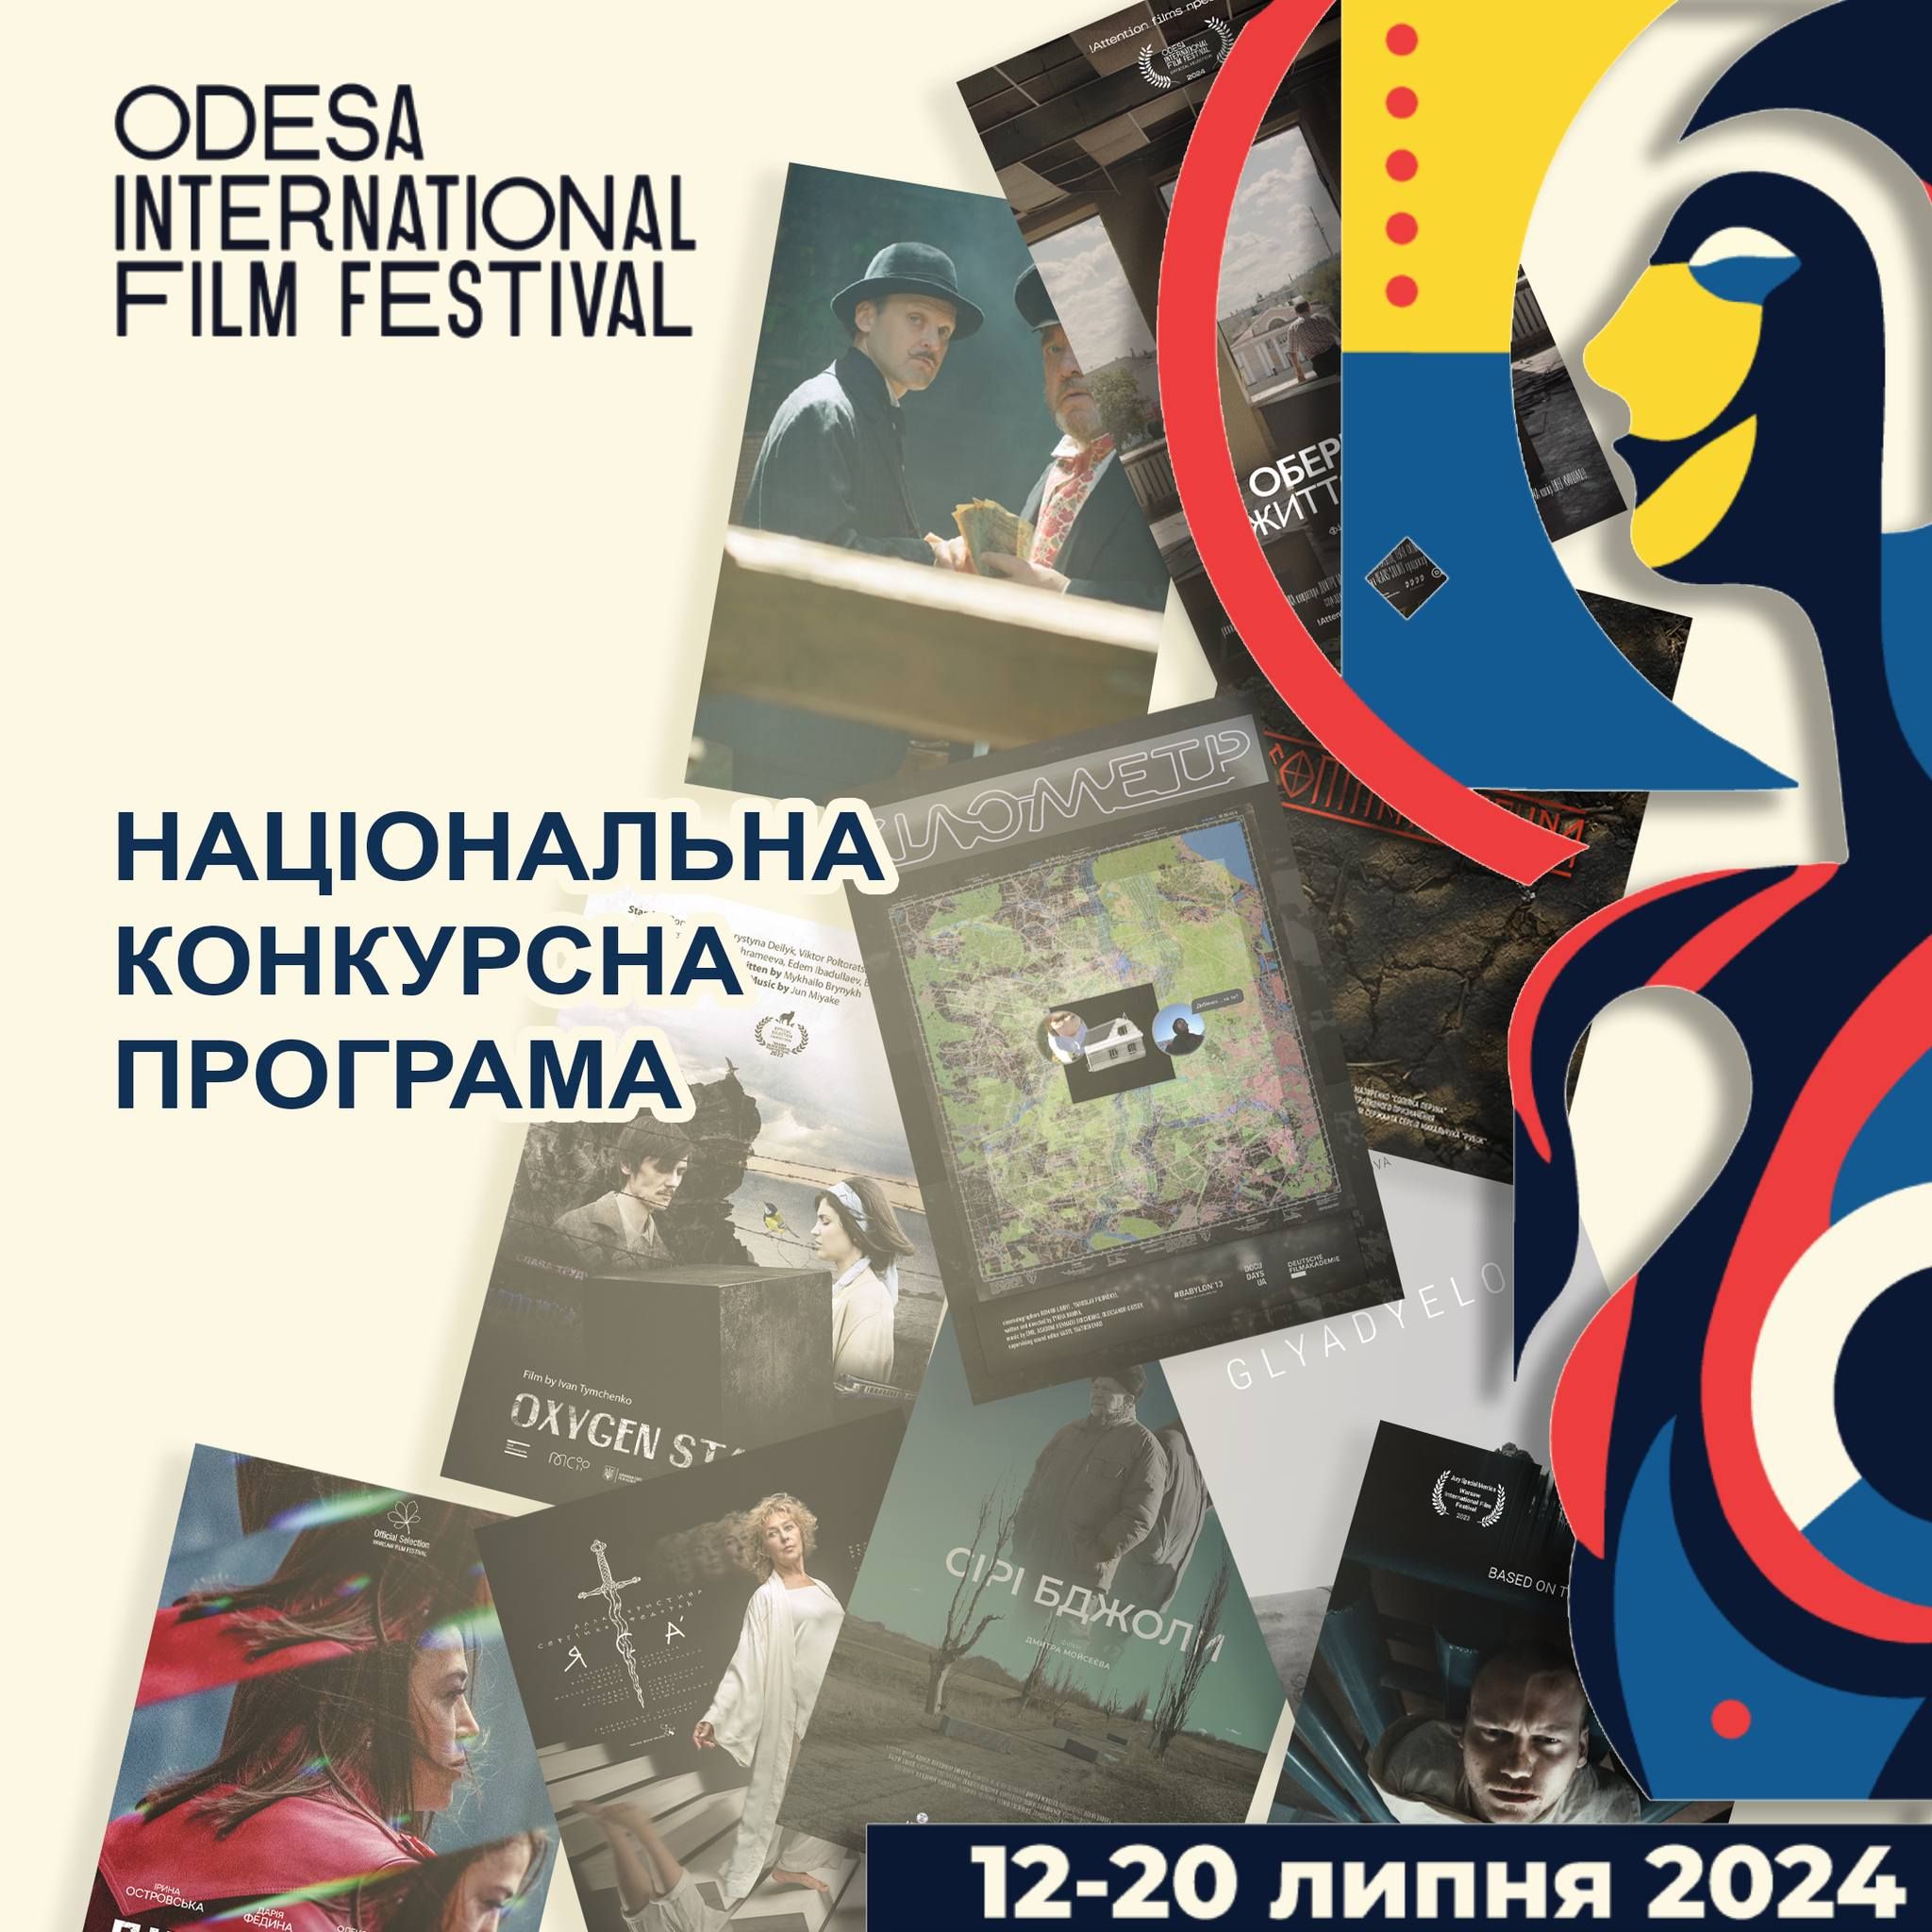 Одеський міжнародний кінофестиваль: оголошено програму Національного конкурсу